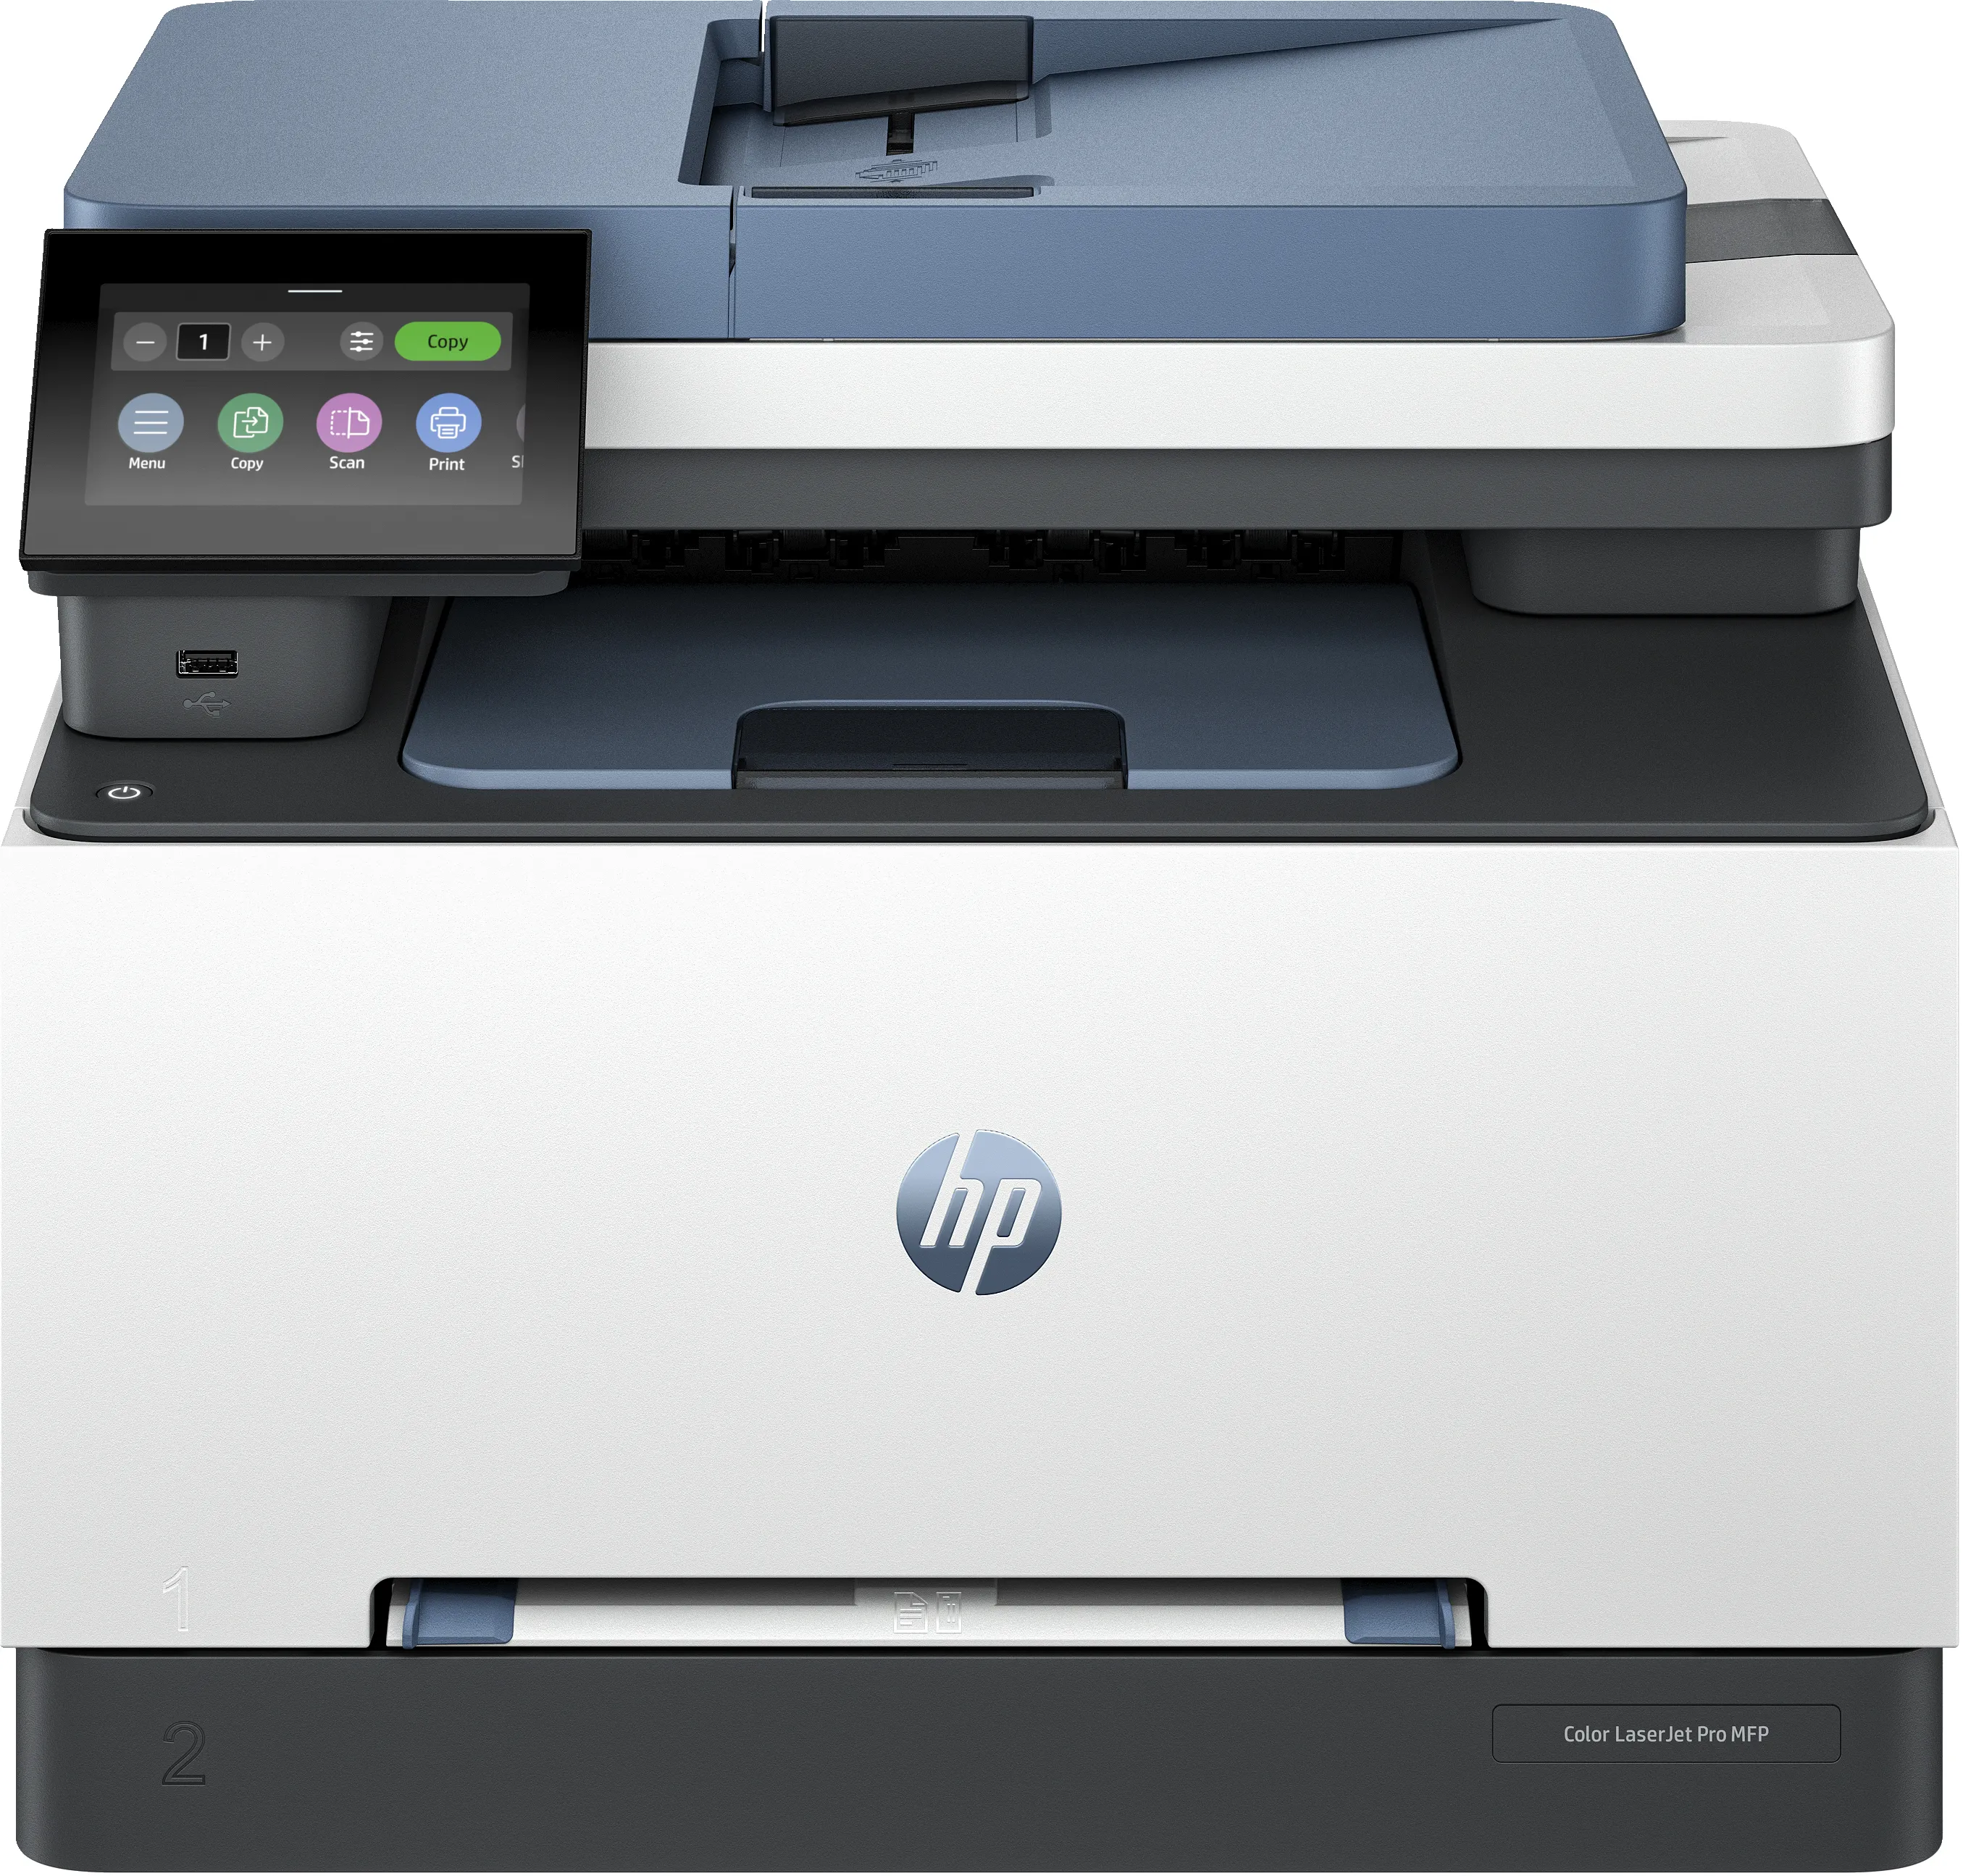 Vente HP Color LaserJet Pro MFP 3302sdw 25ppm Printer HP au meilleur prix - visuel 2